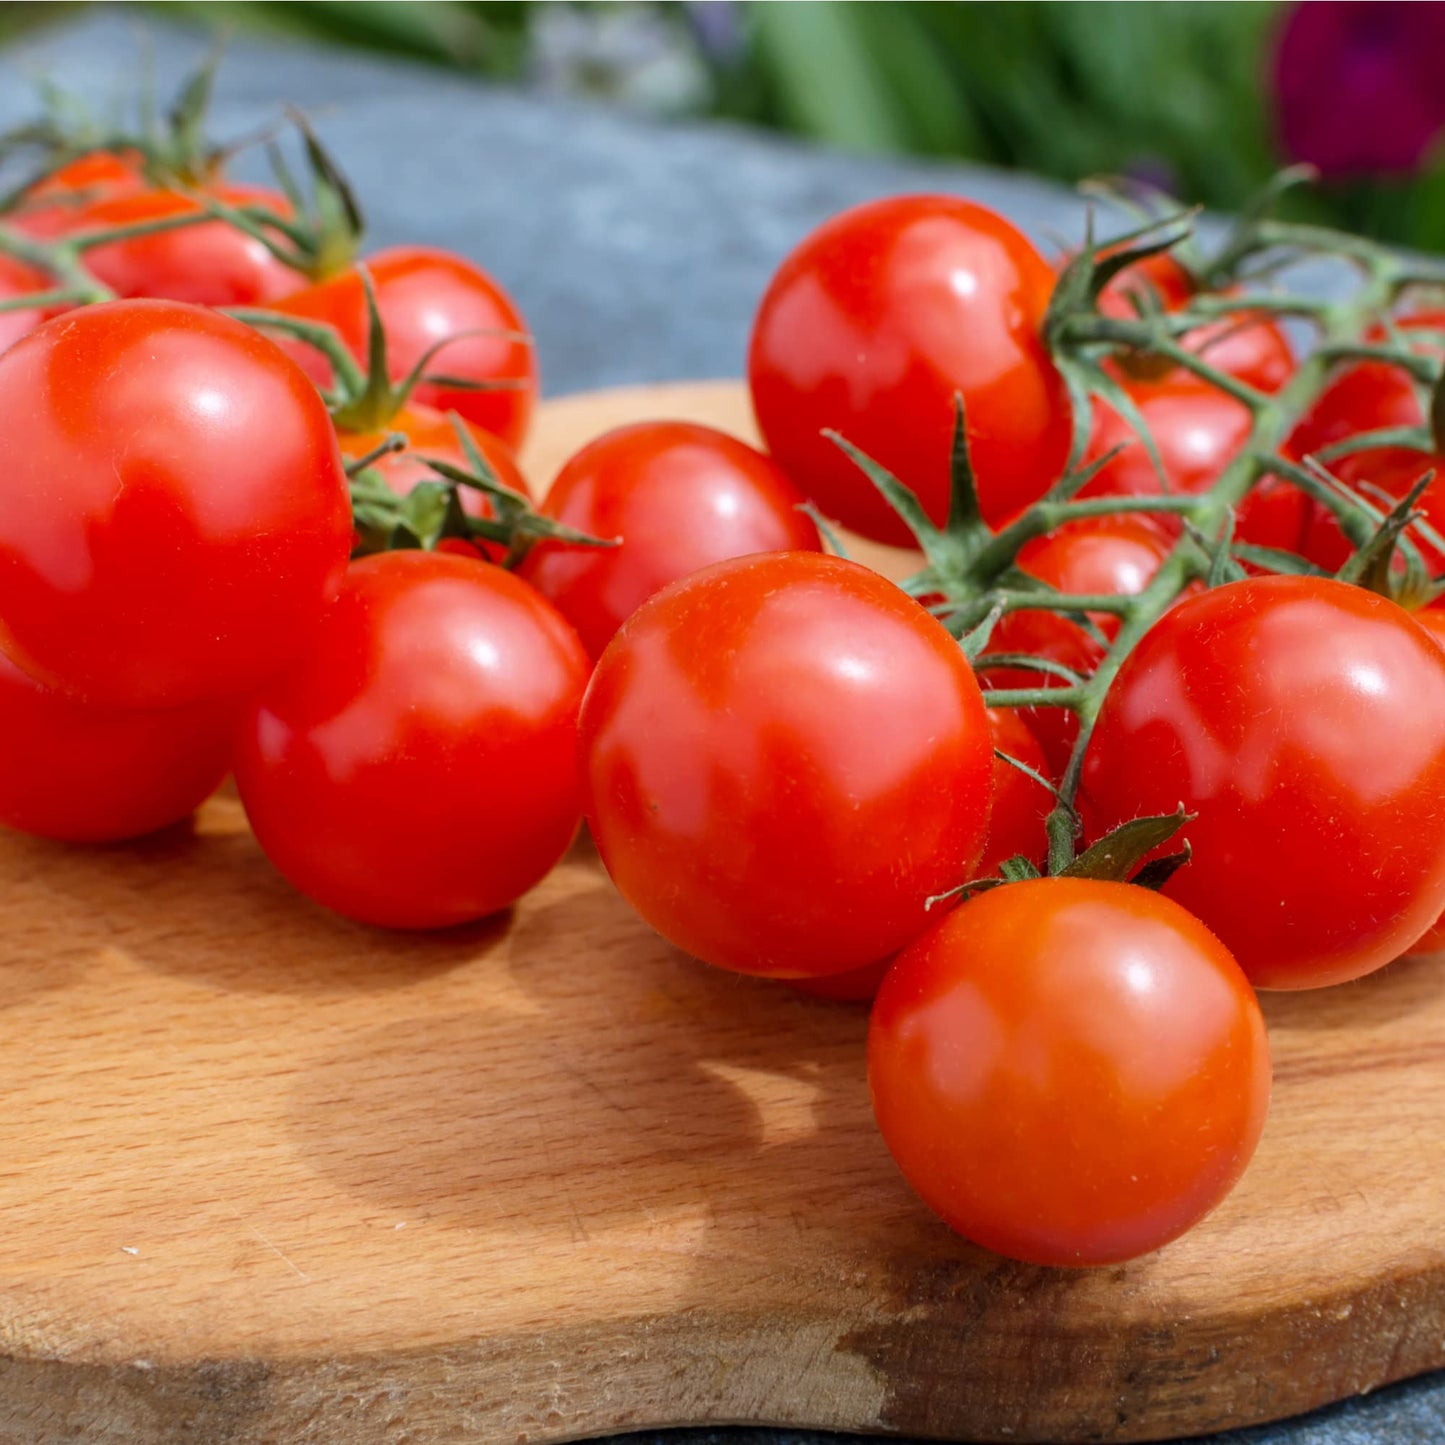 Tomato Plants - Gardener's Mixed Selection Package - 'Sweet Million', 'Tumbling Tom', 'Gardener's Delight' - 18 x Plug Plant Pack - AcquaGarden